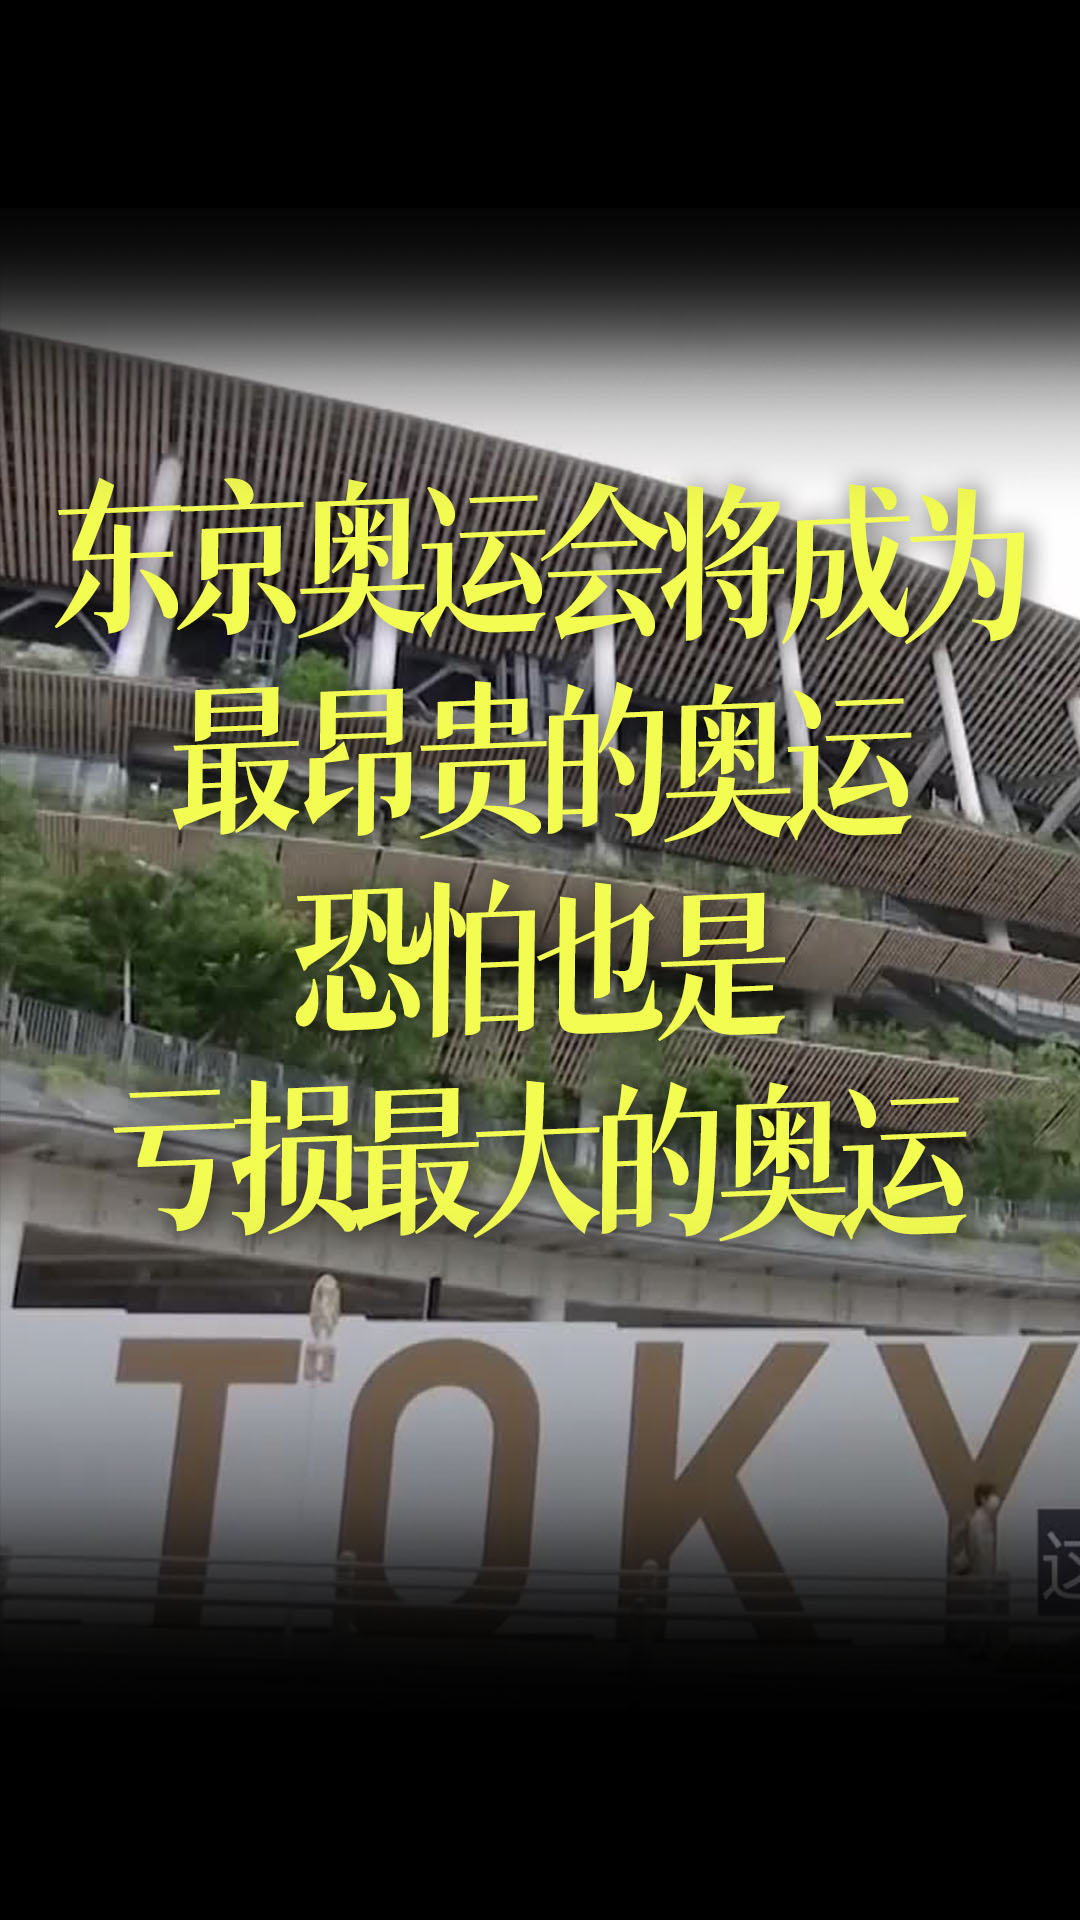 【中文字幕】虽然没有观众，但东京奥运会将成为最昂贵的奥运，恐怕也是亏损最大的奥运